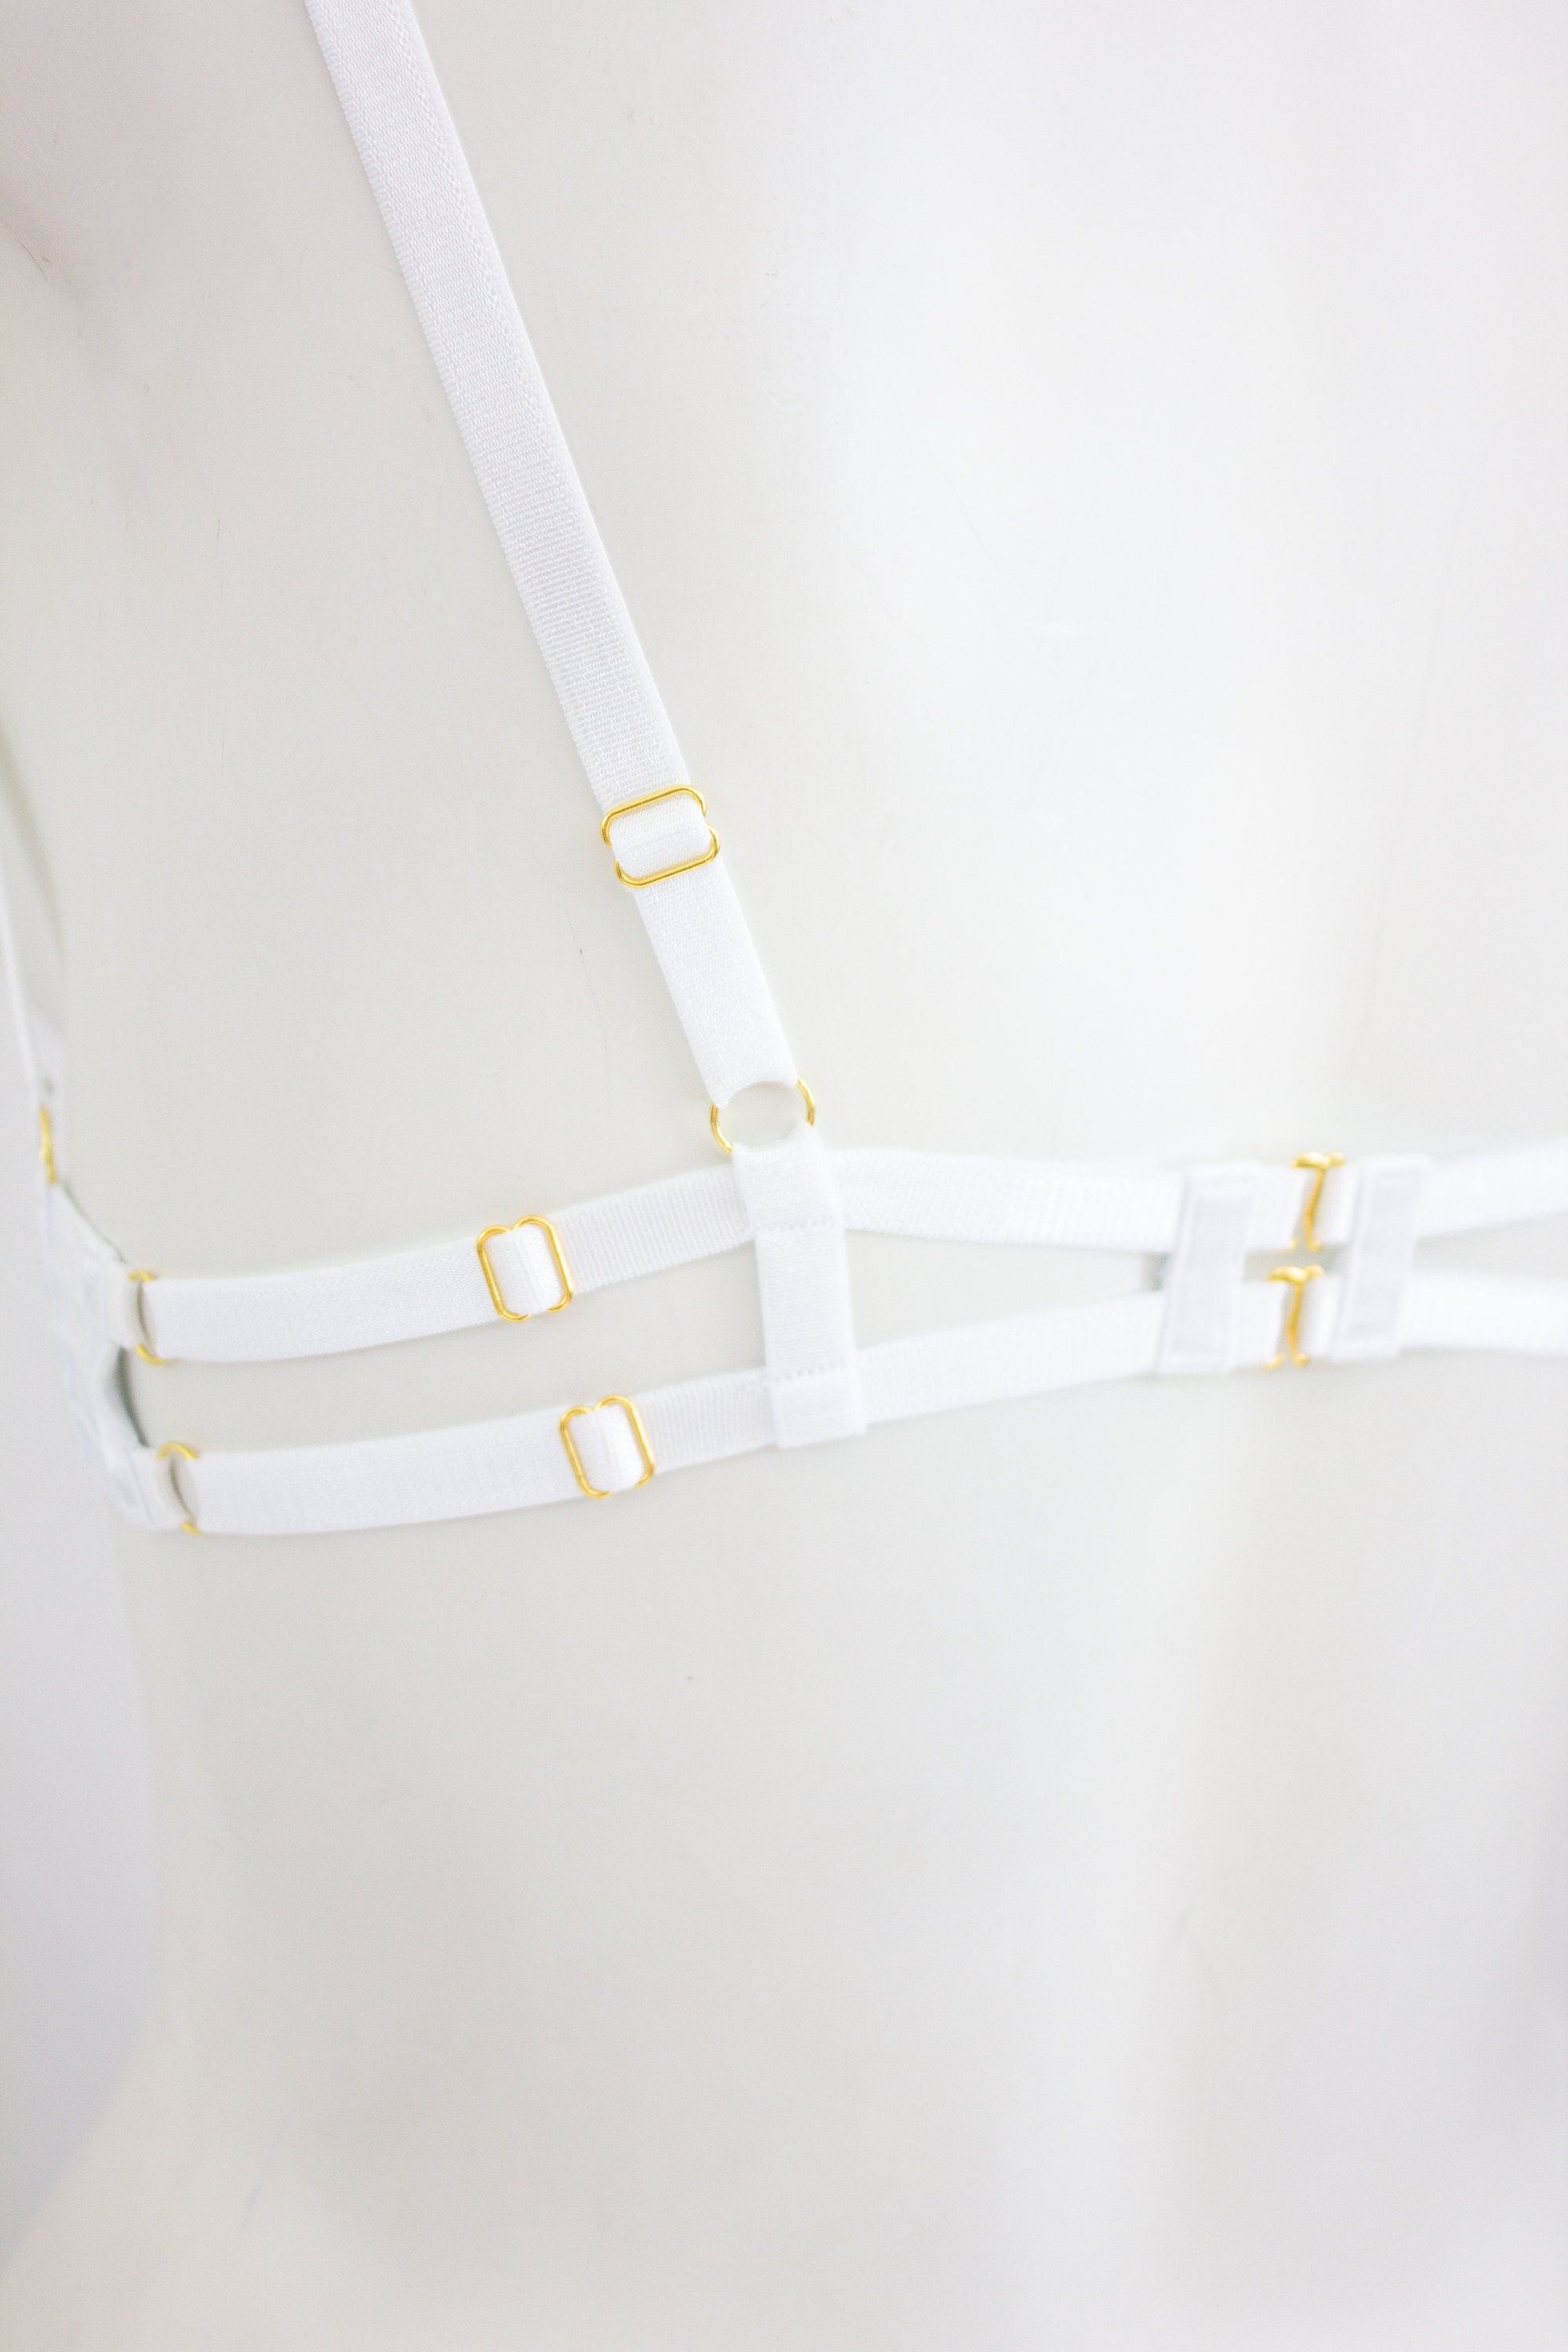 White Body Harness Lingerie: White Bralette Cage Bra Exotic Dancewear  Strappy Lingerie Wedding Garter Belt Bondage Wedding Lingerie, Garter -   Canada